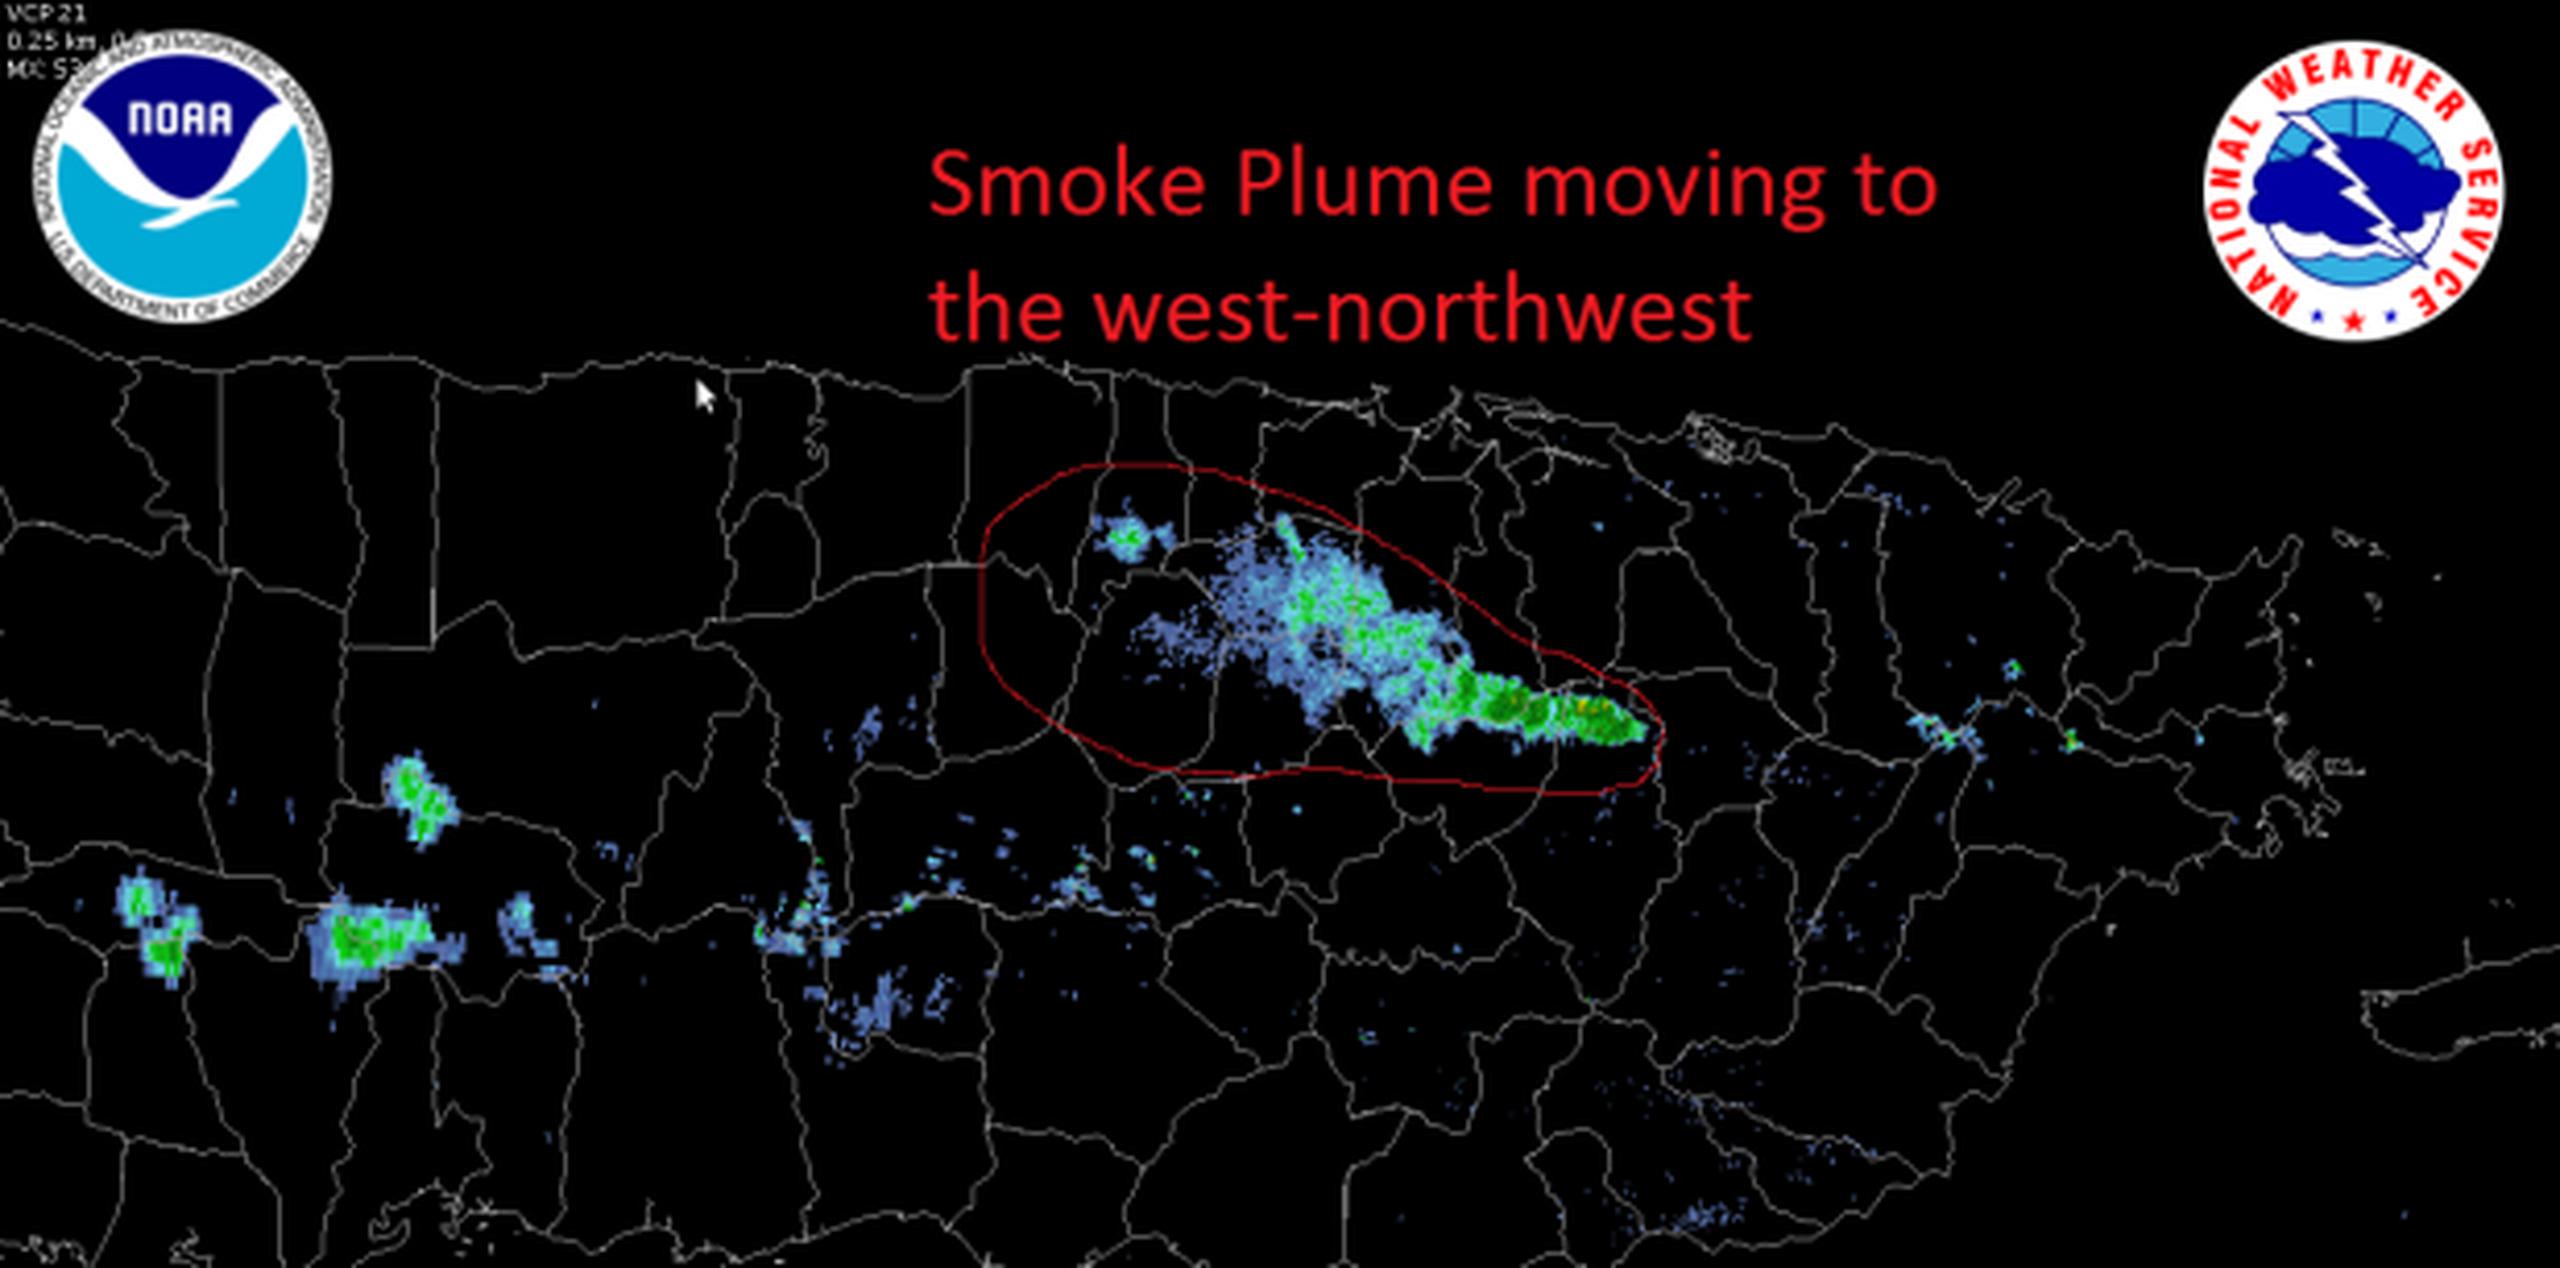 Imagen de NOAA suministrada por AEMEAD sobre la humareda que provoca el fuego en Gurabo.